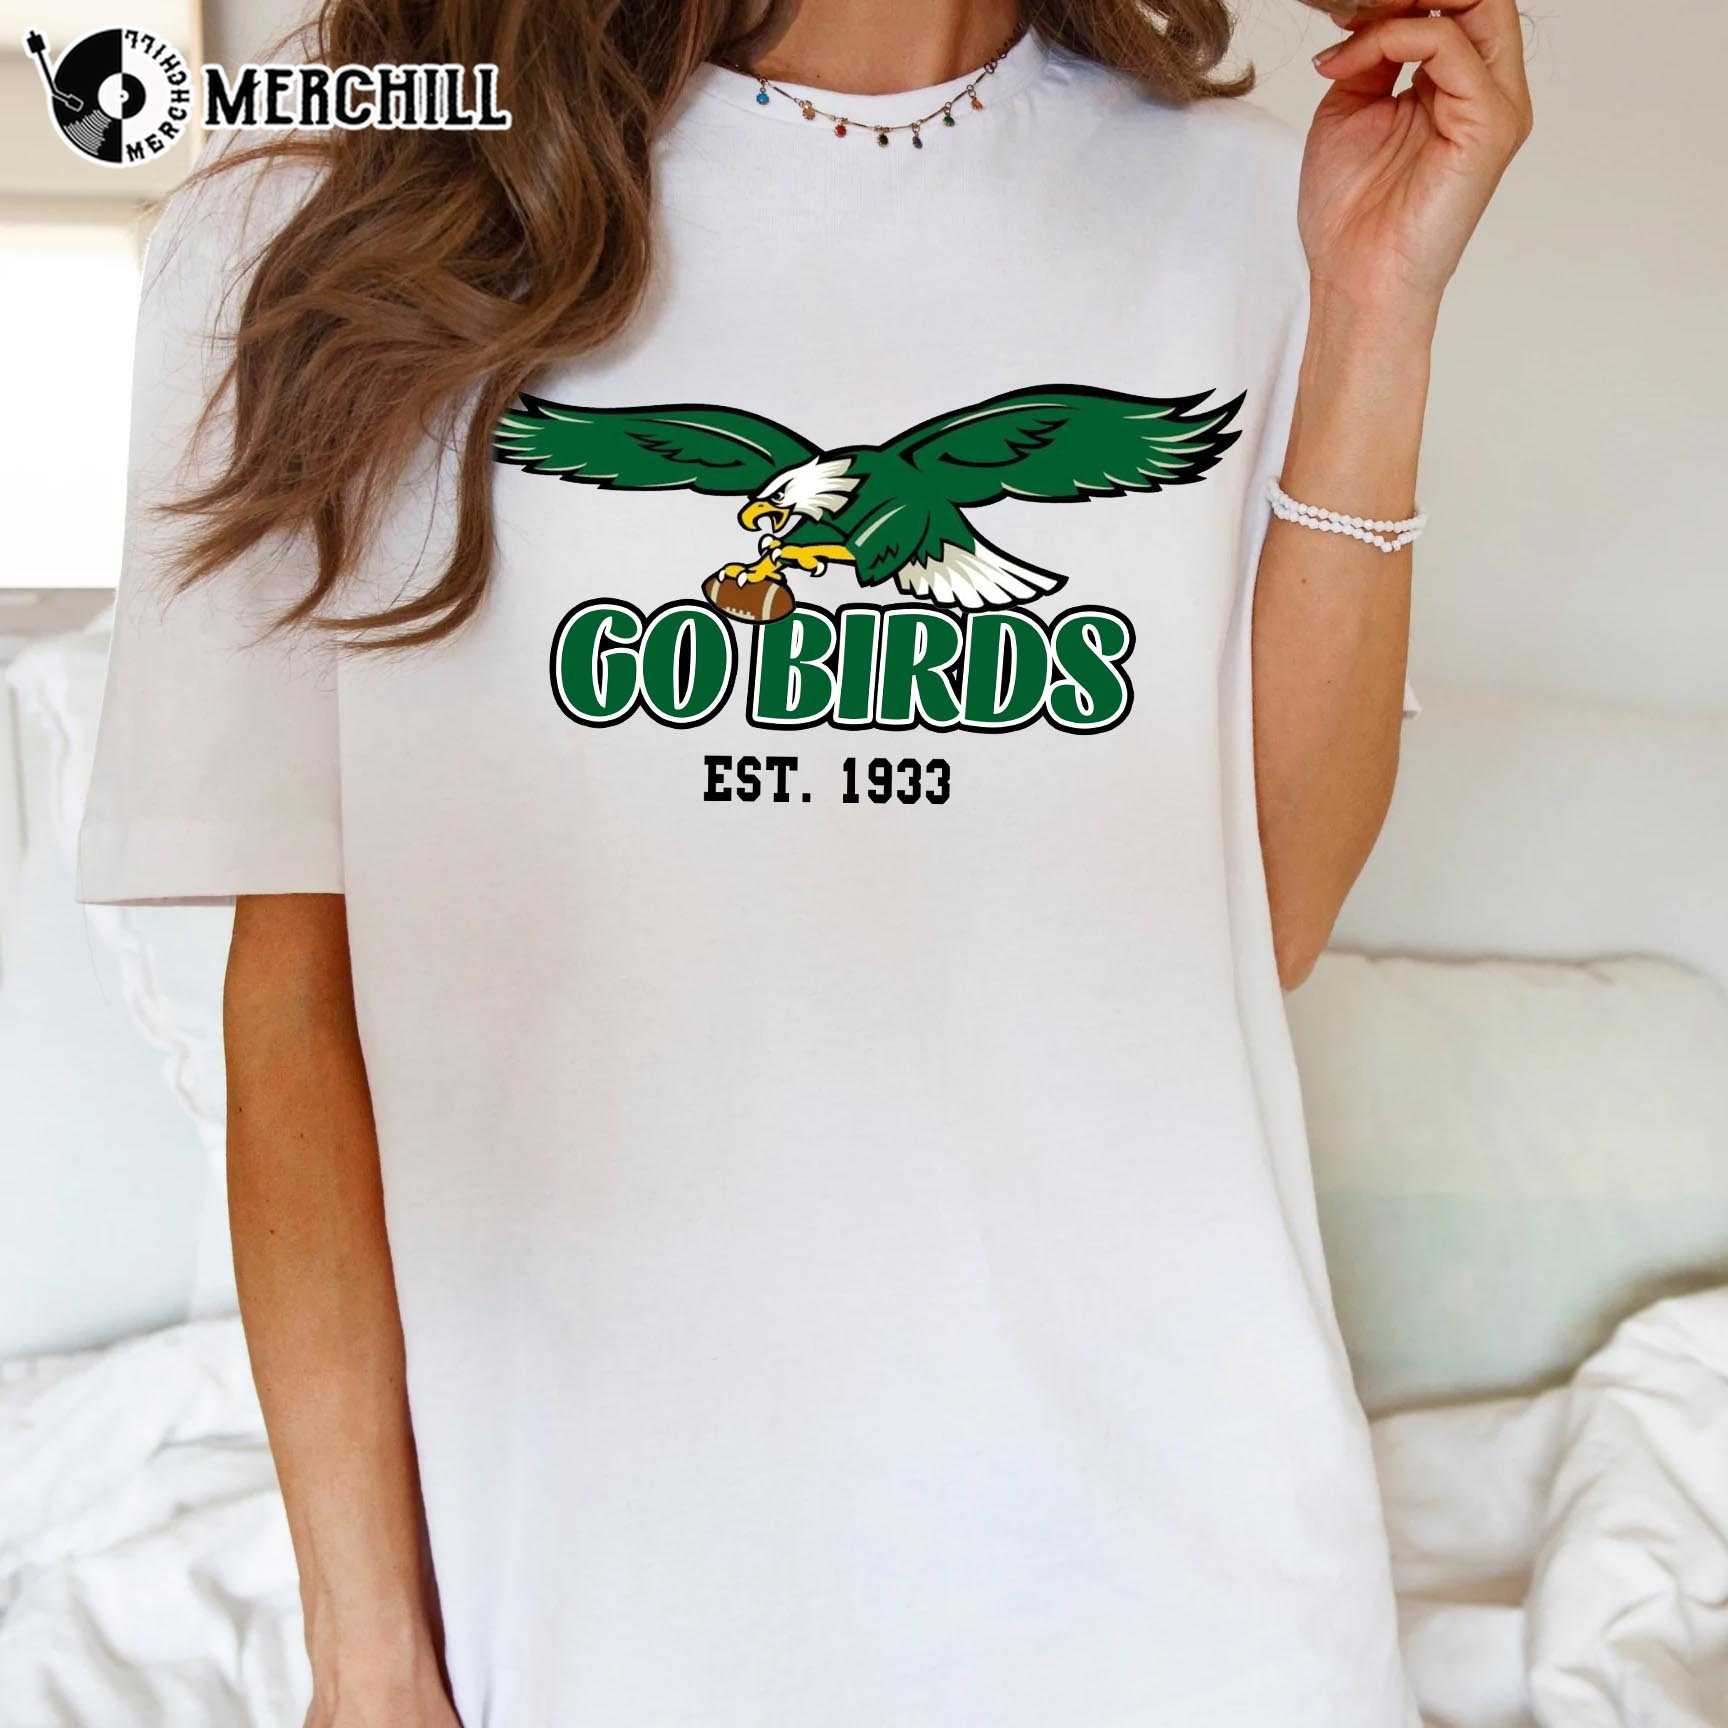 Go Birds!!! : r/eagles